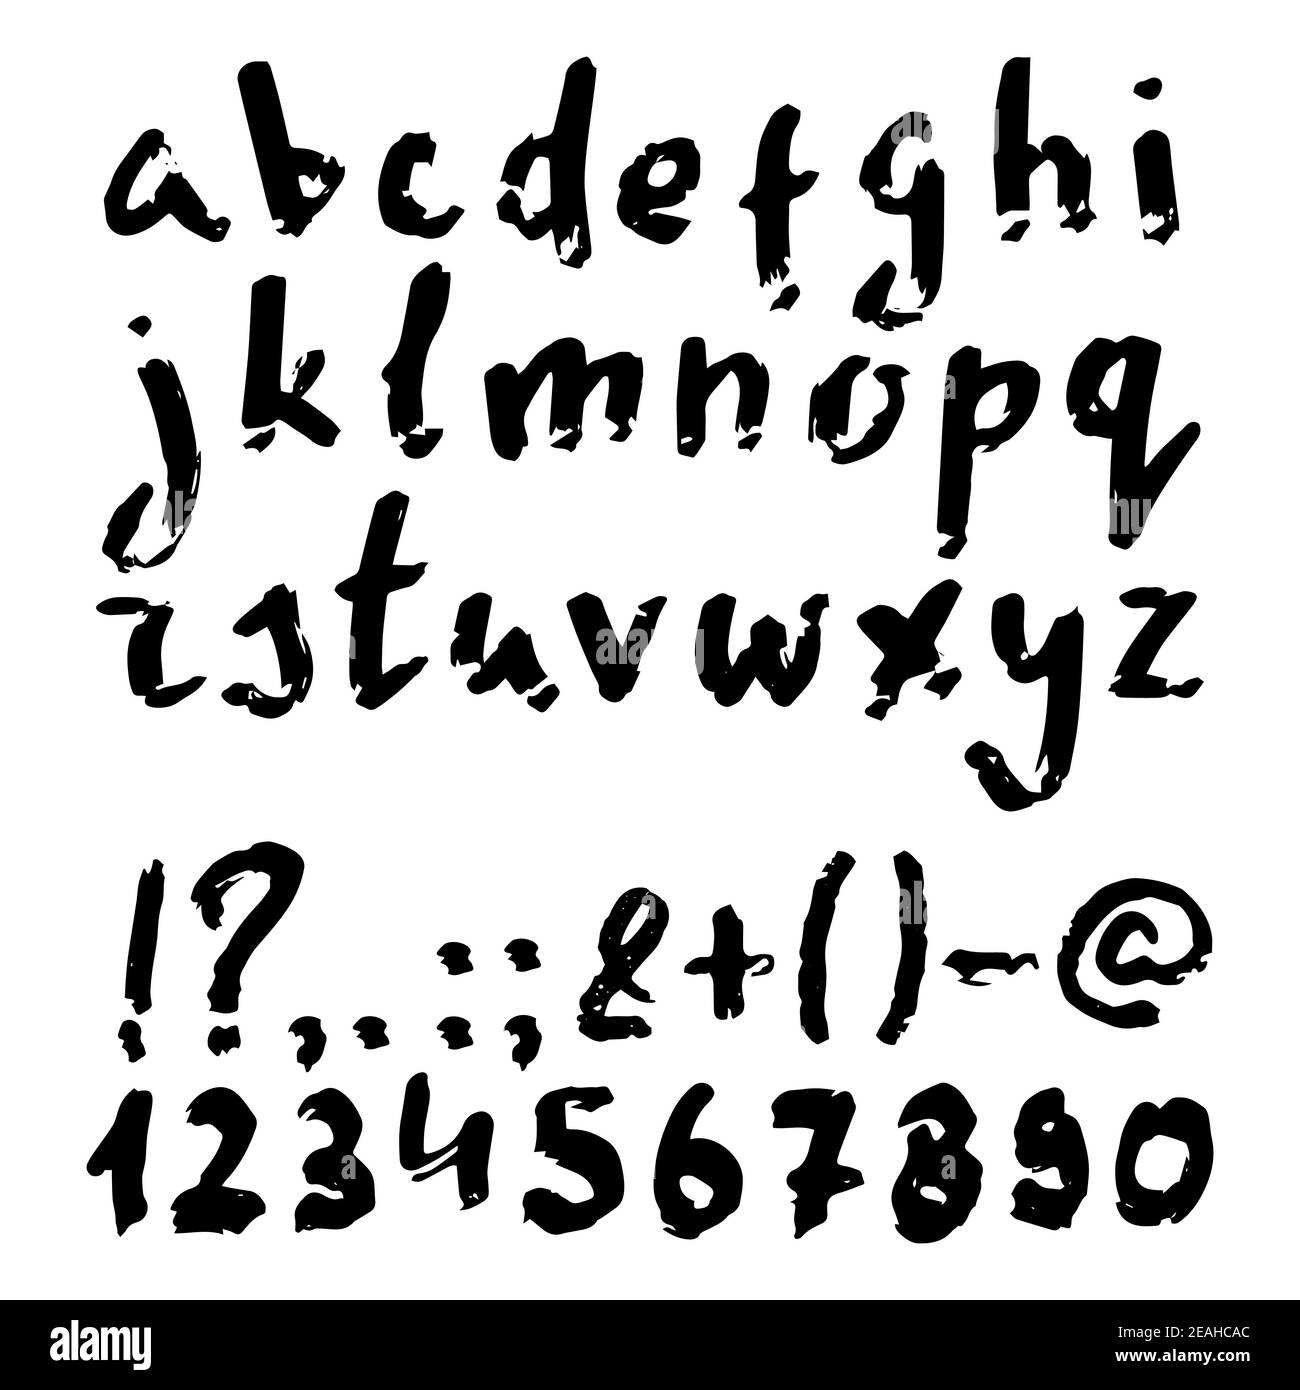 Handwritten fonts Stock Vector Images - Alamy